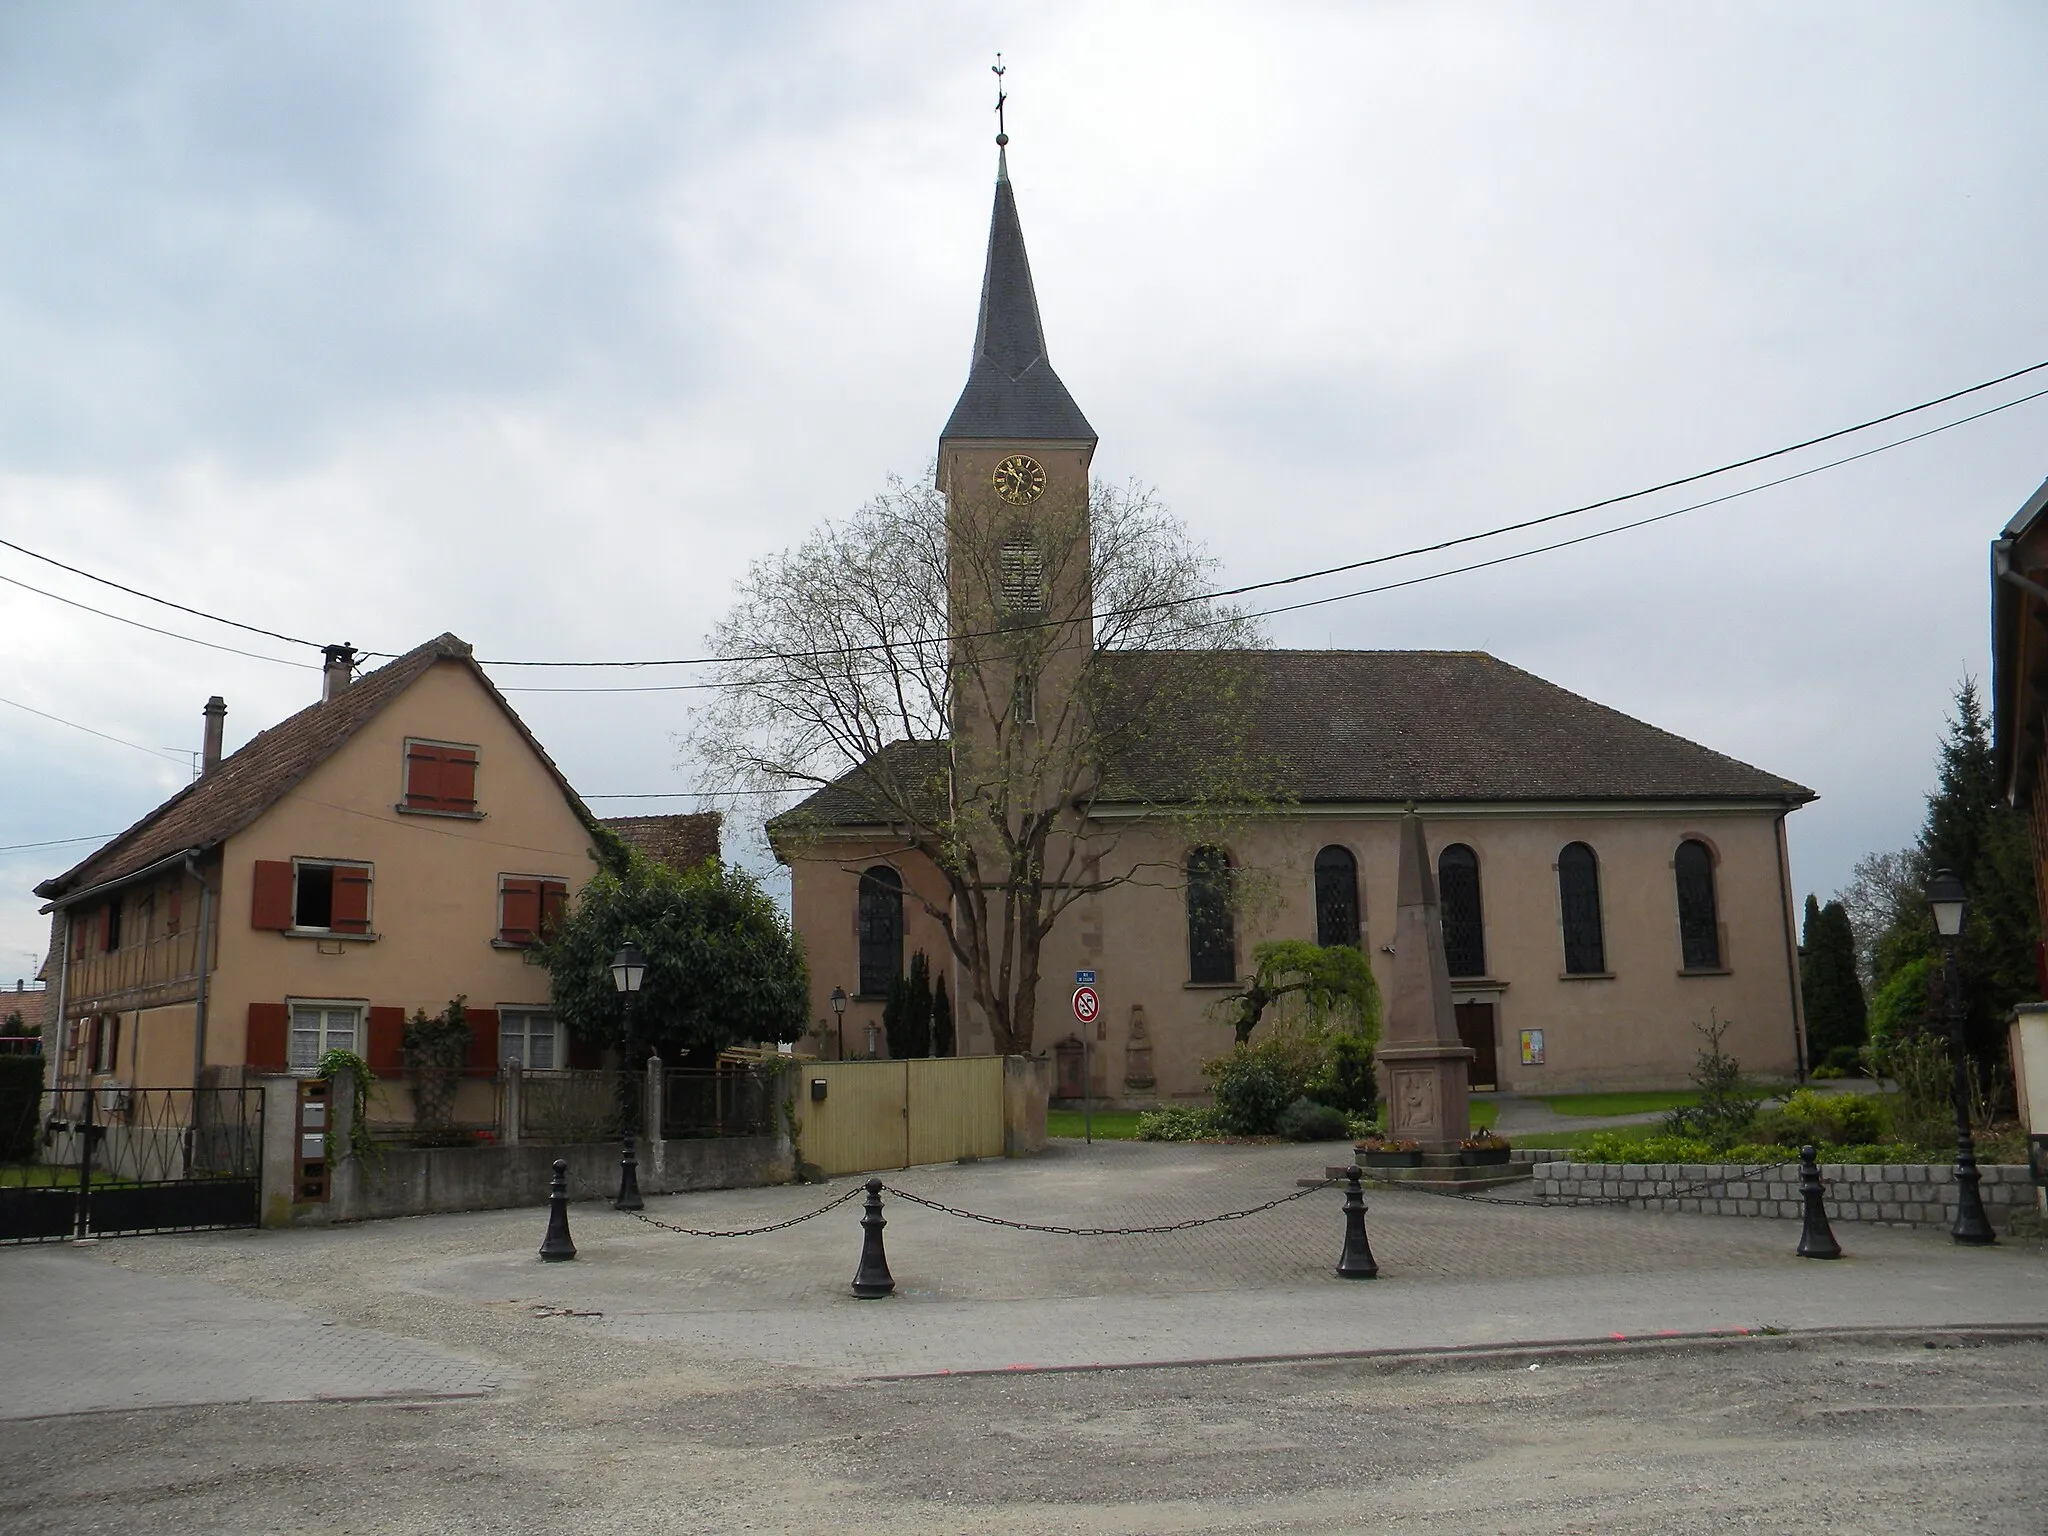 Image of Lipsheim